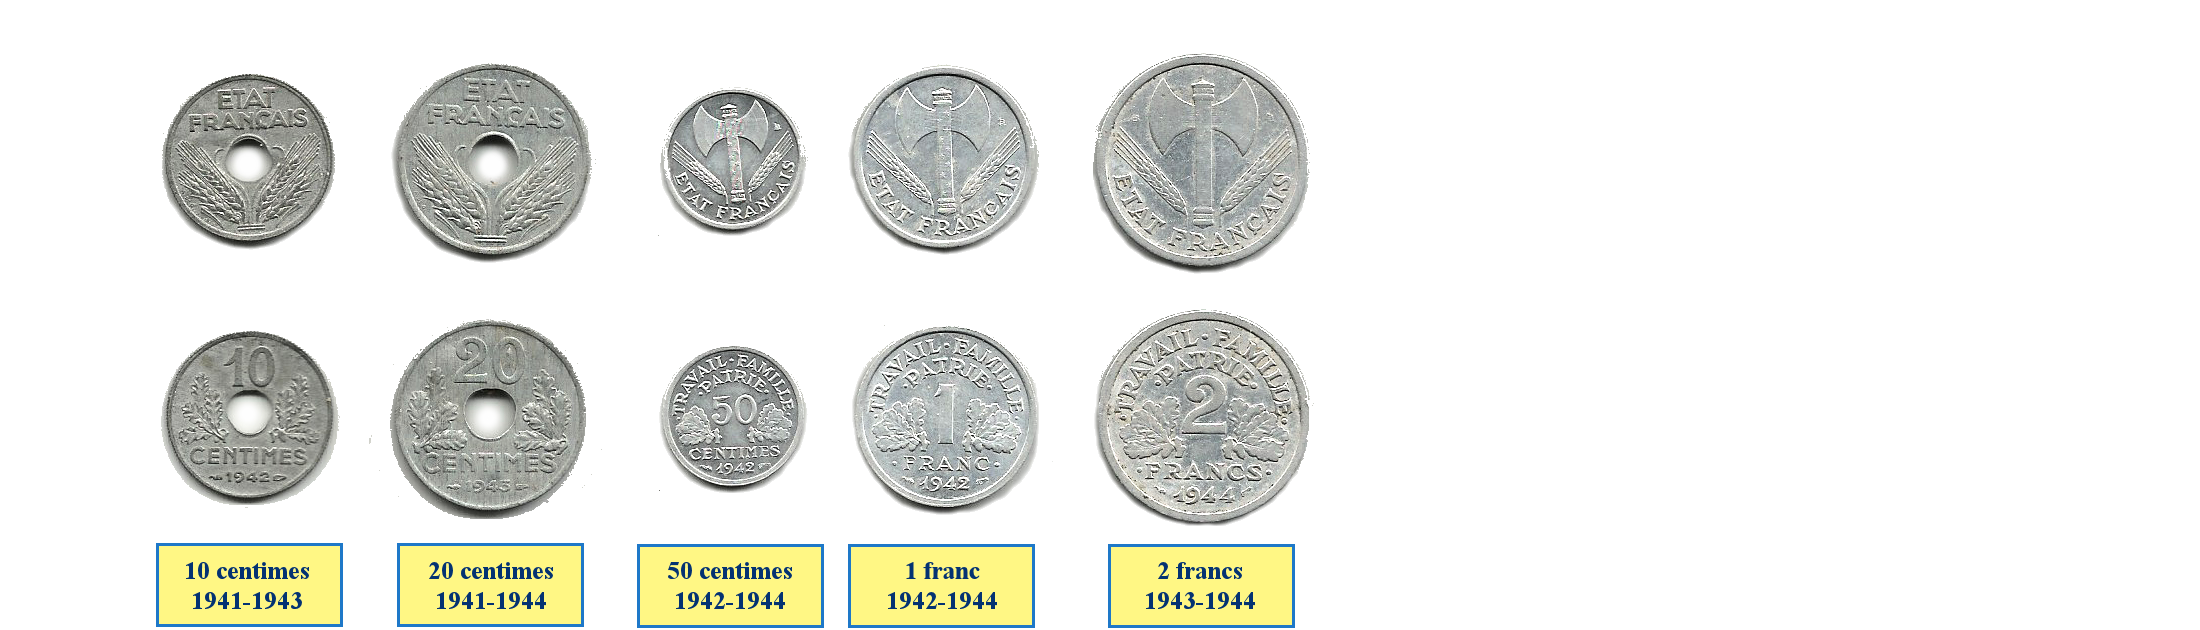 Photos de pièces de monnaies de l'Etat Français